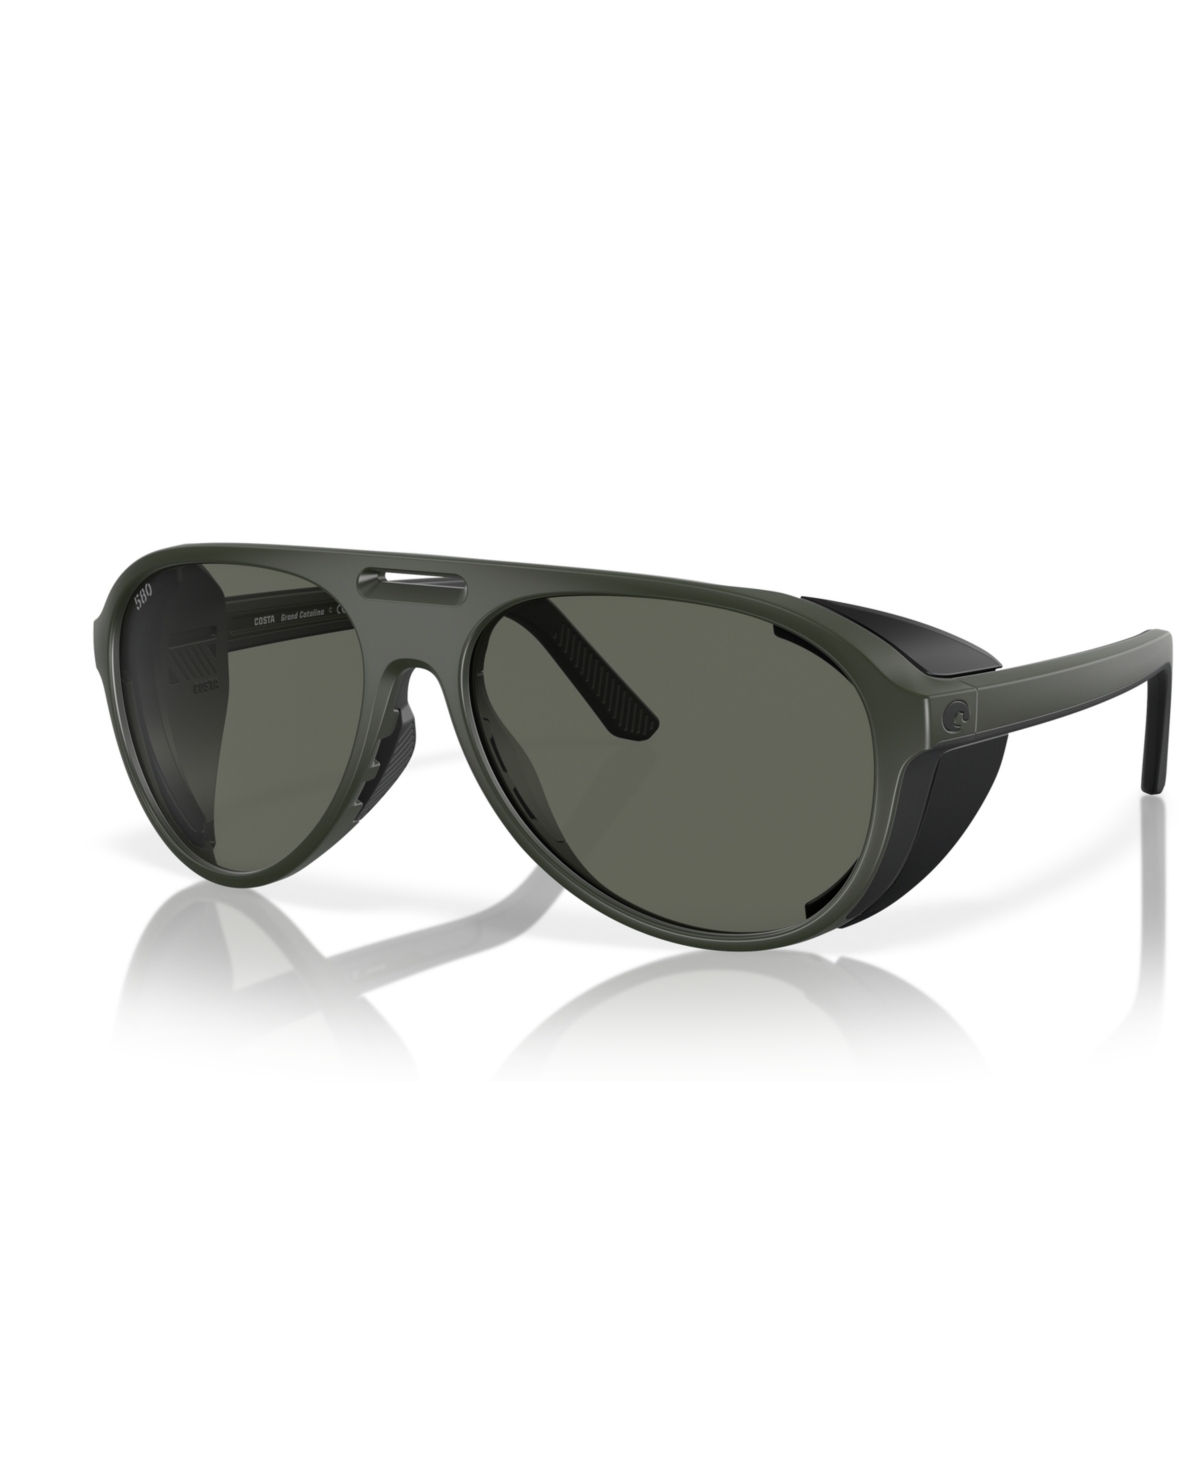 Costa Del Mar Men's Polarized Sunglasses, Grand Catalina 6s9117 In Matte Olive